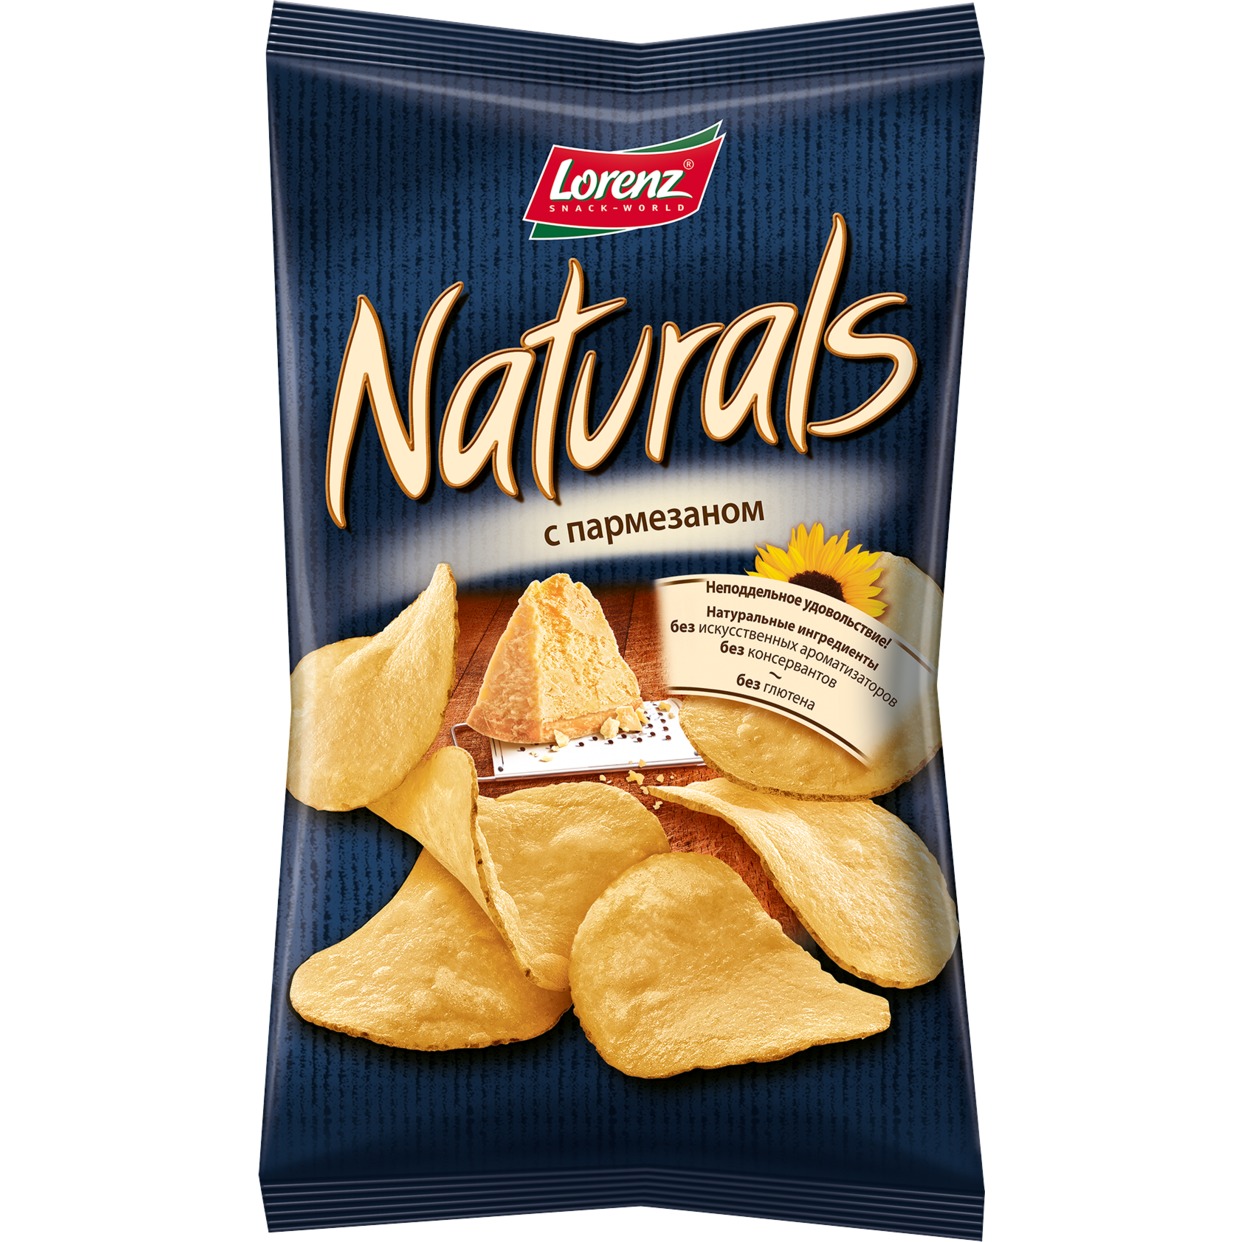 Картофельные чипсы “Naturals” с пармезаном, 100 гр. по акции в Пятерочке